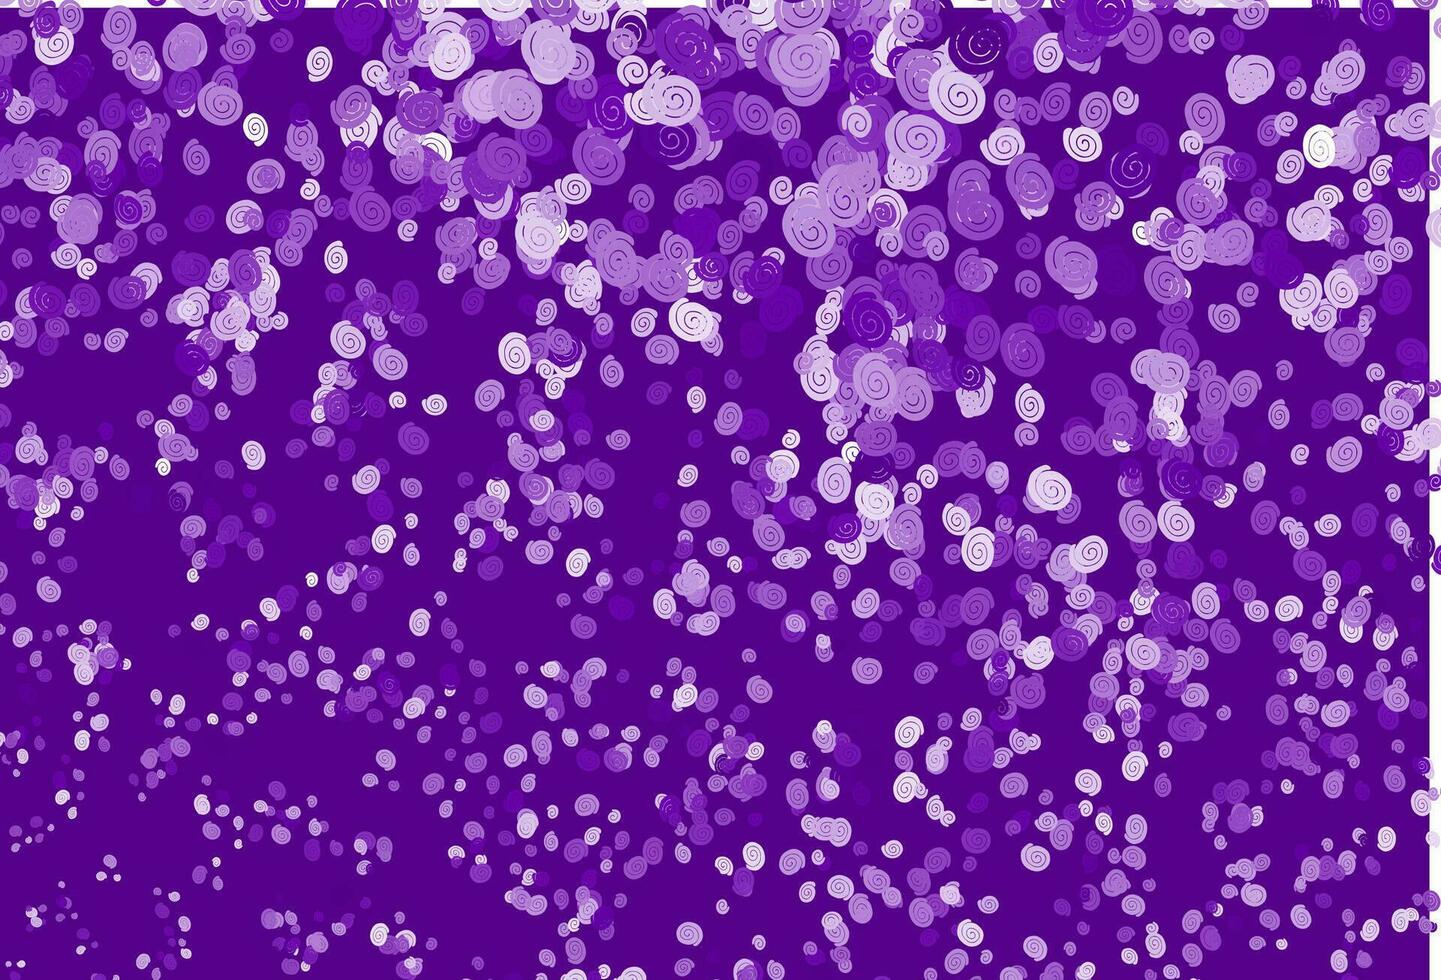 patrón de vector púrpura claro con formas líquidas.